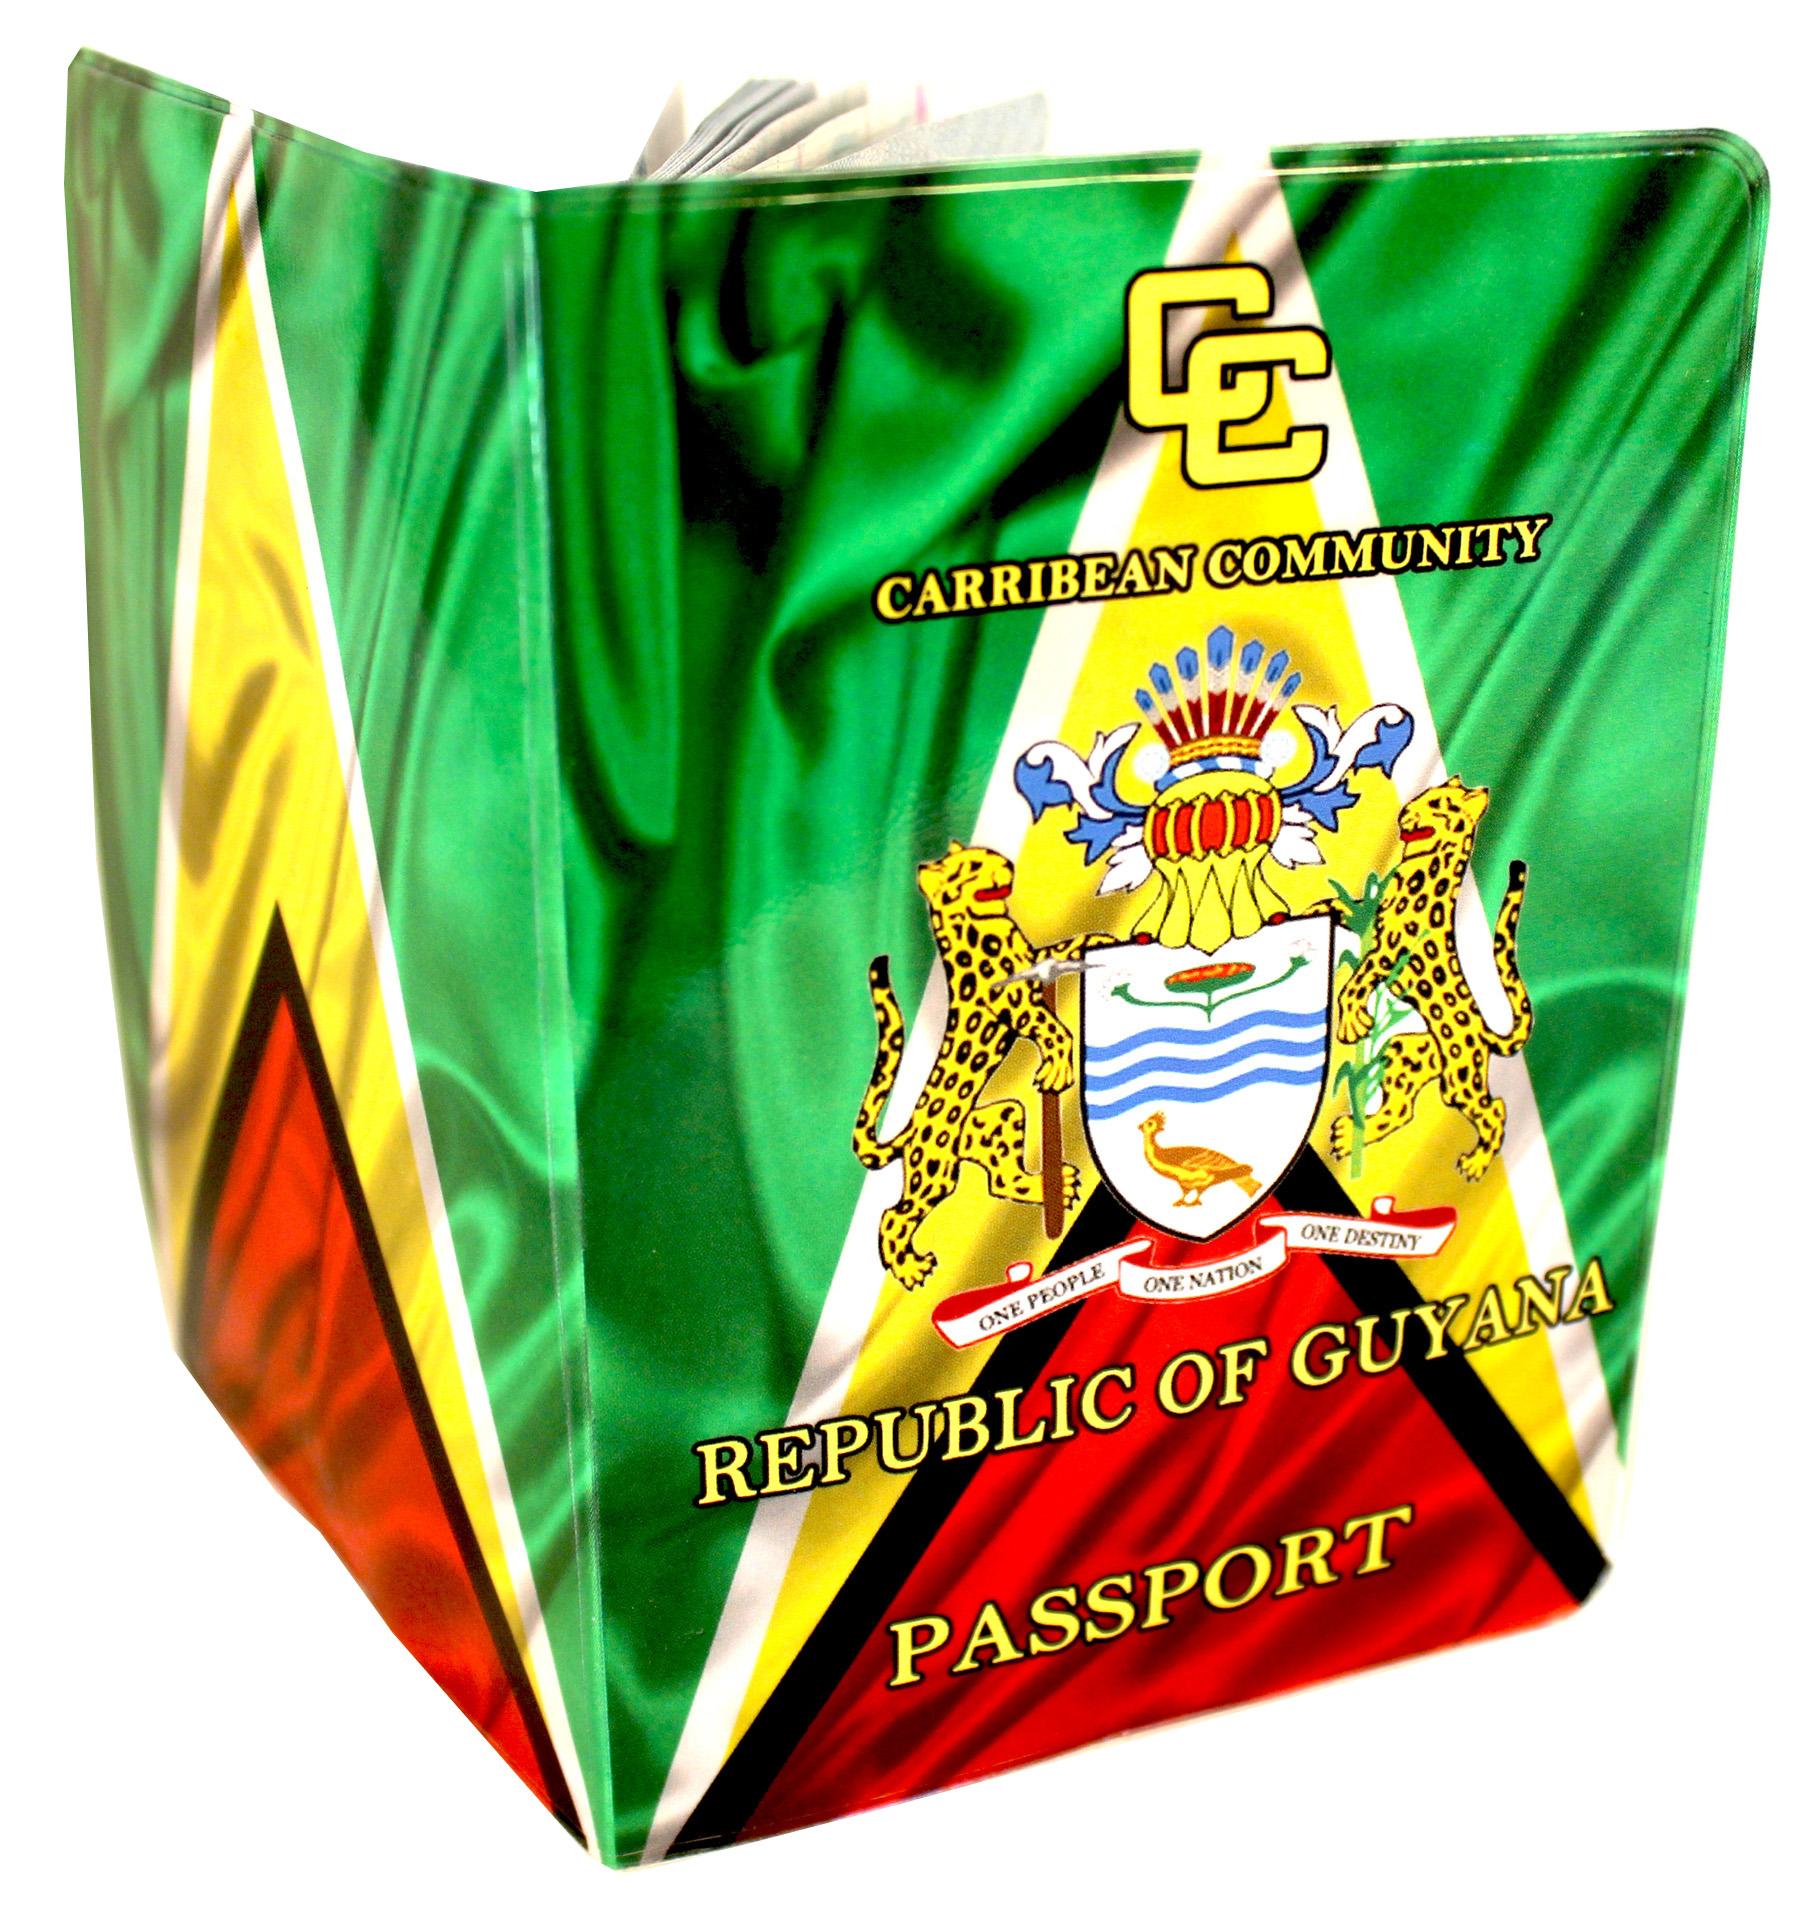 Guyana Passport Cover